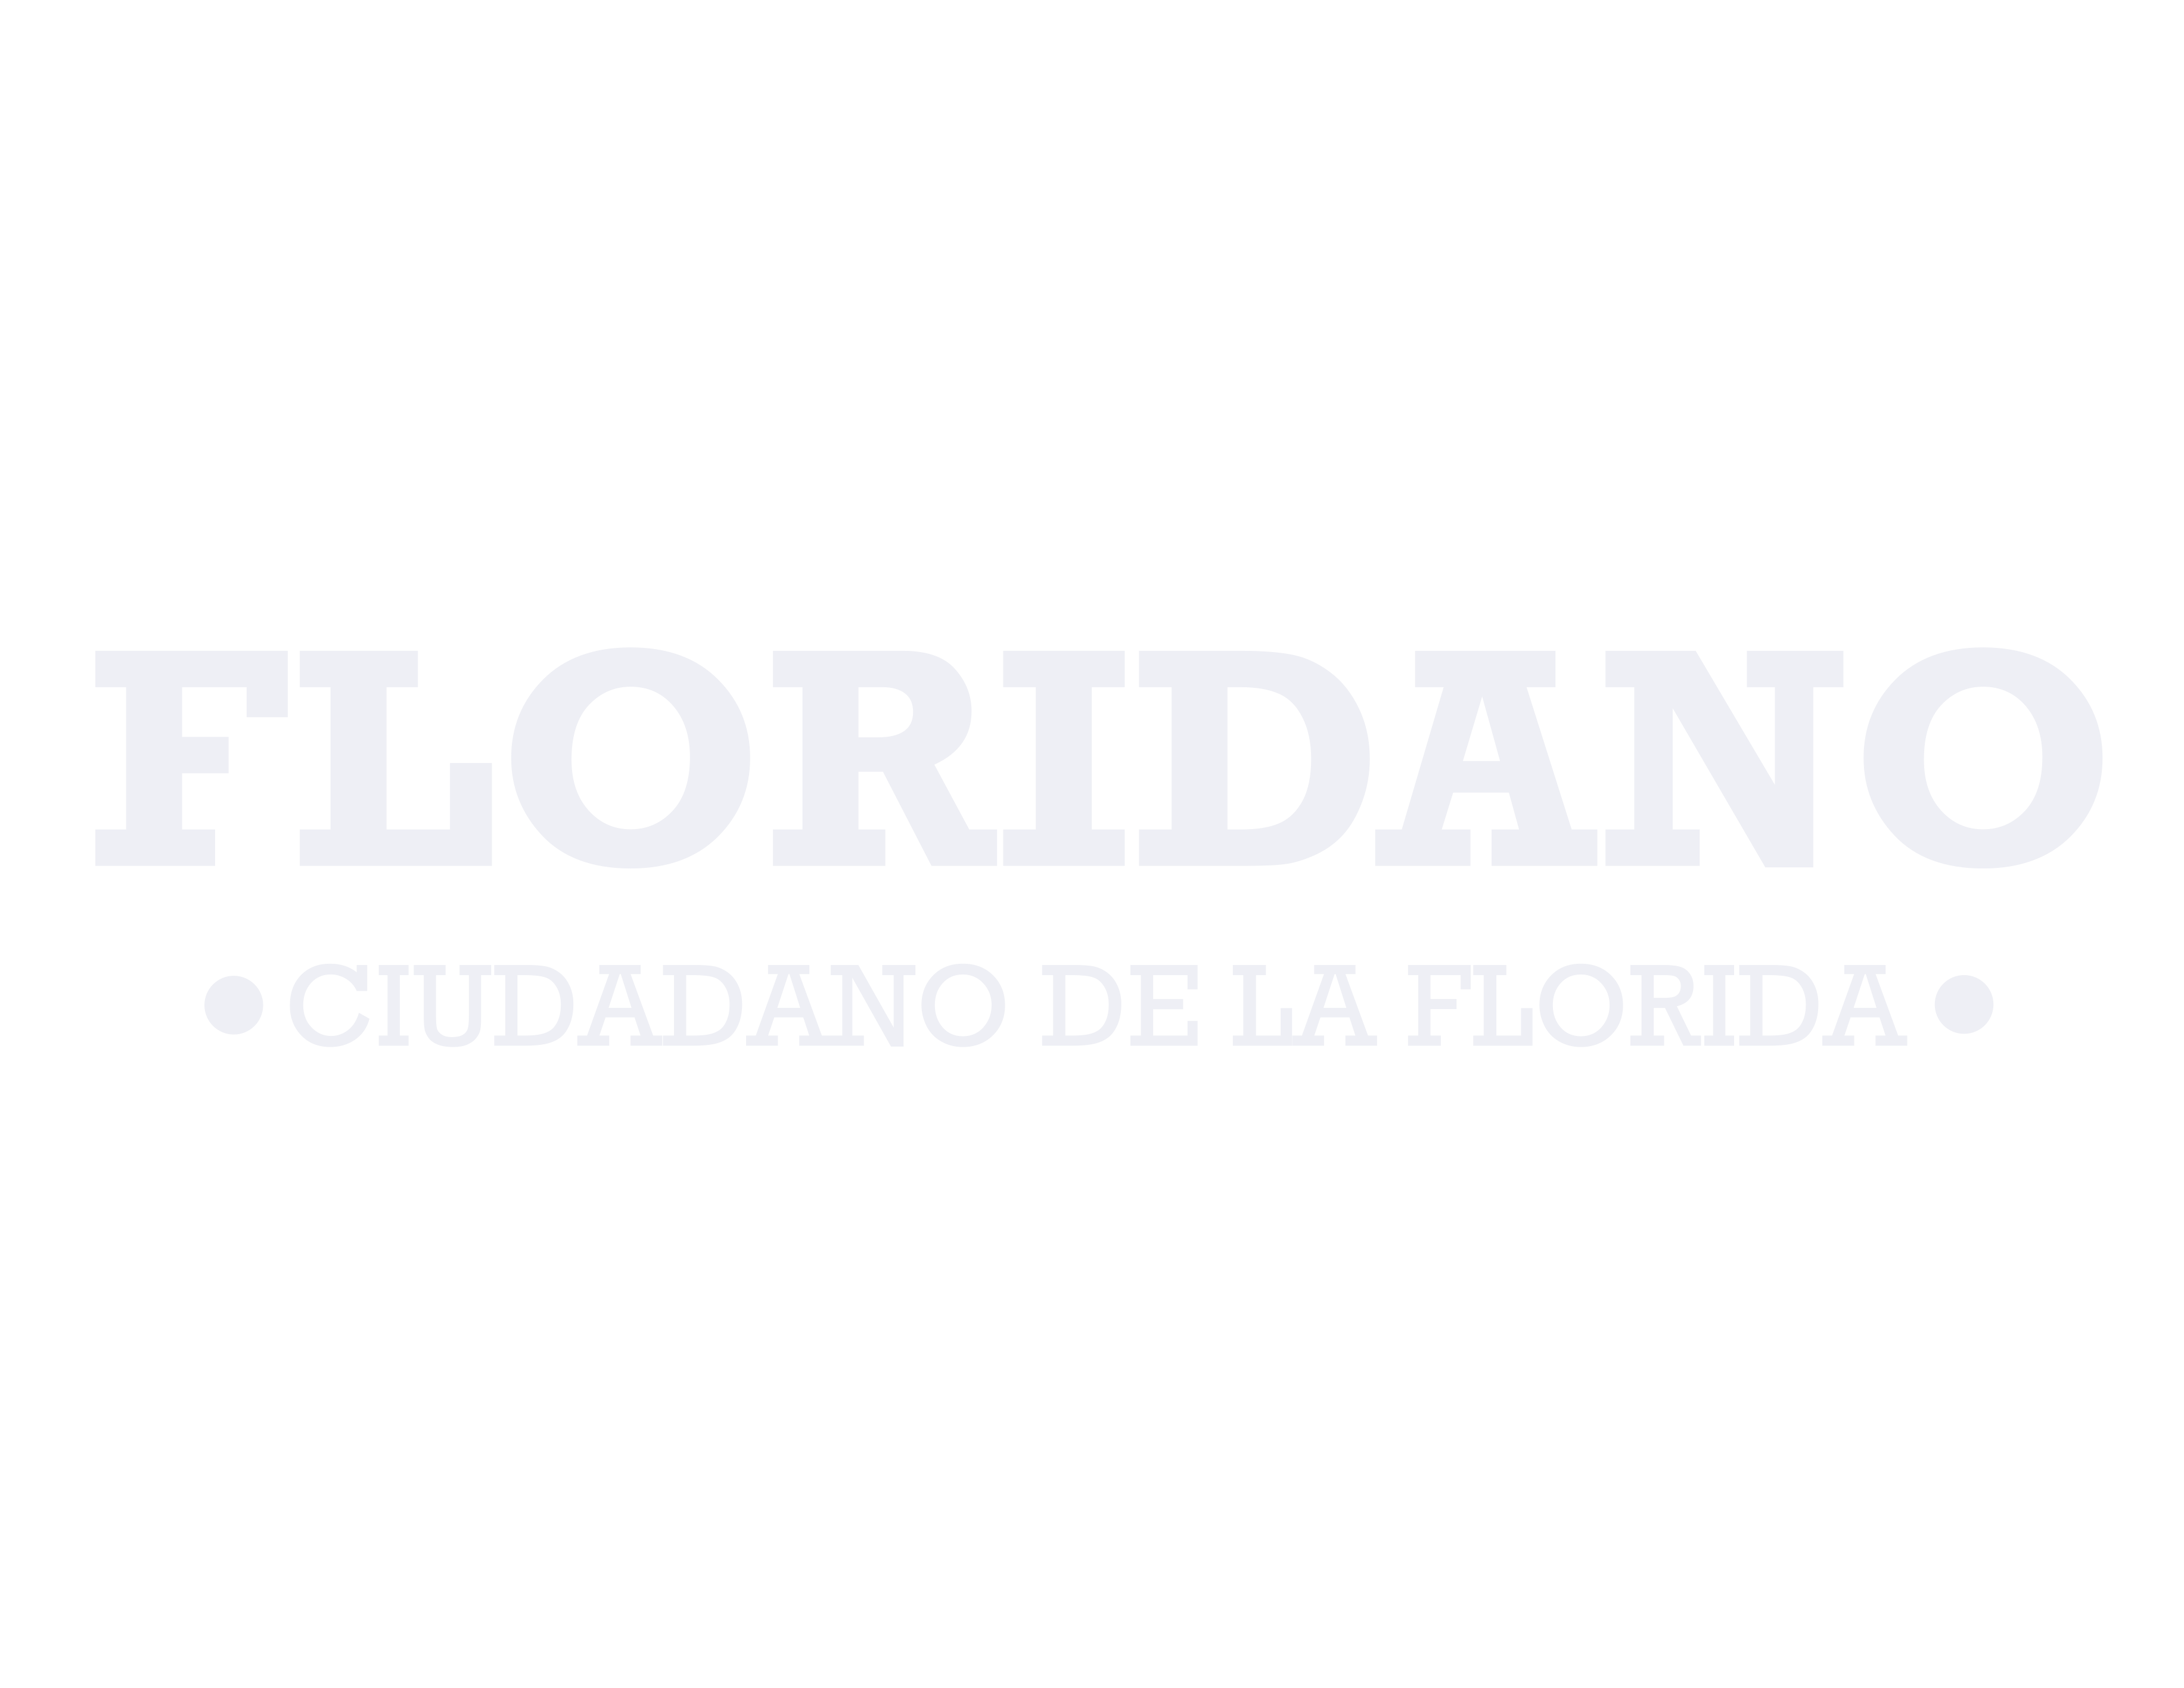 FLORIDANO